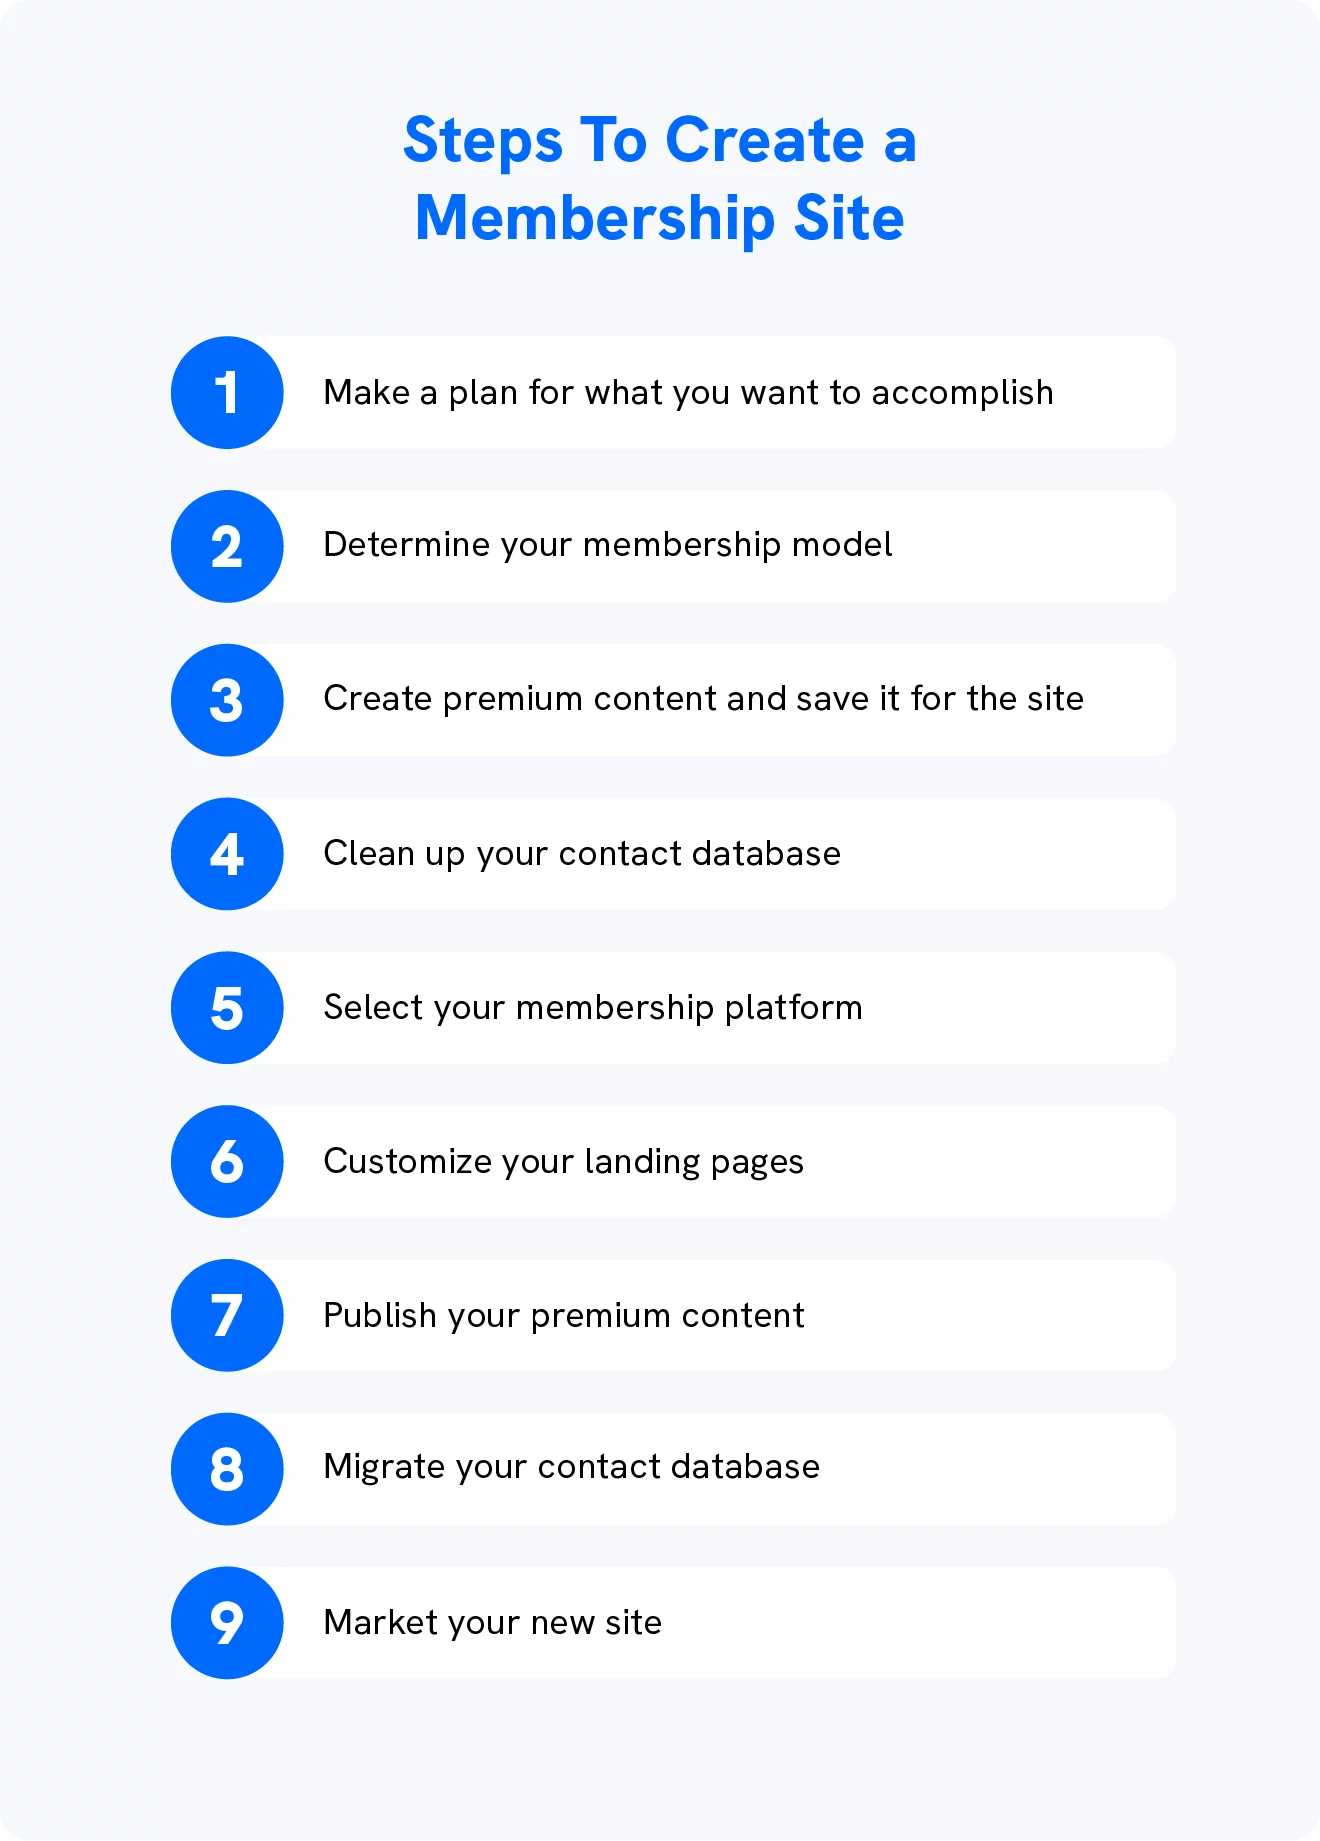 На изображении показаны 9 шагов, которые помогут создателям контента создать членский сайт.